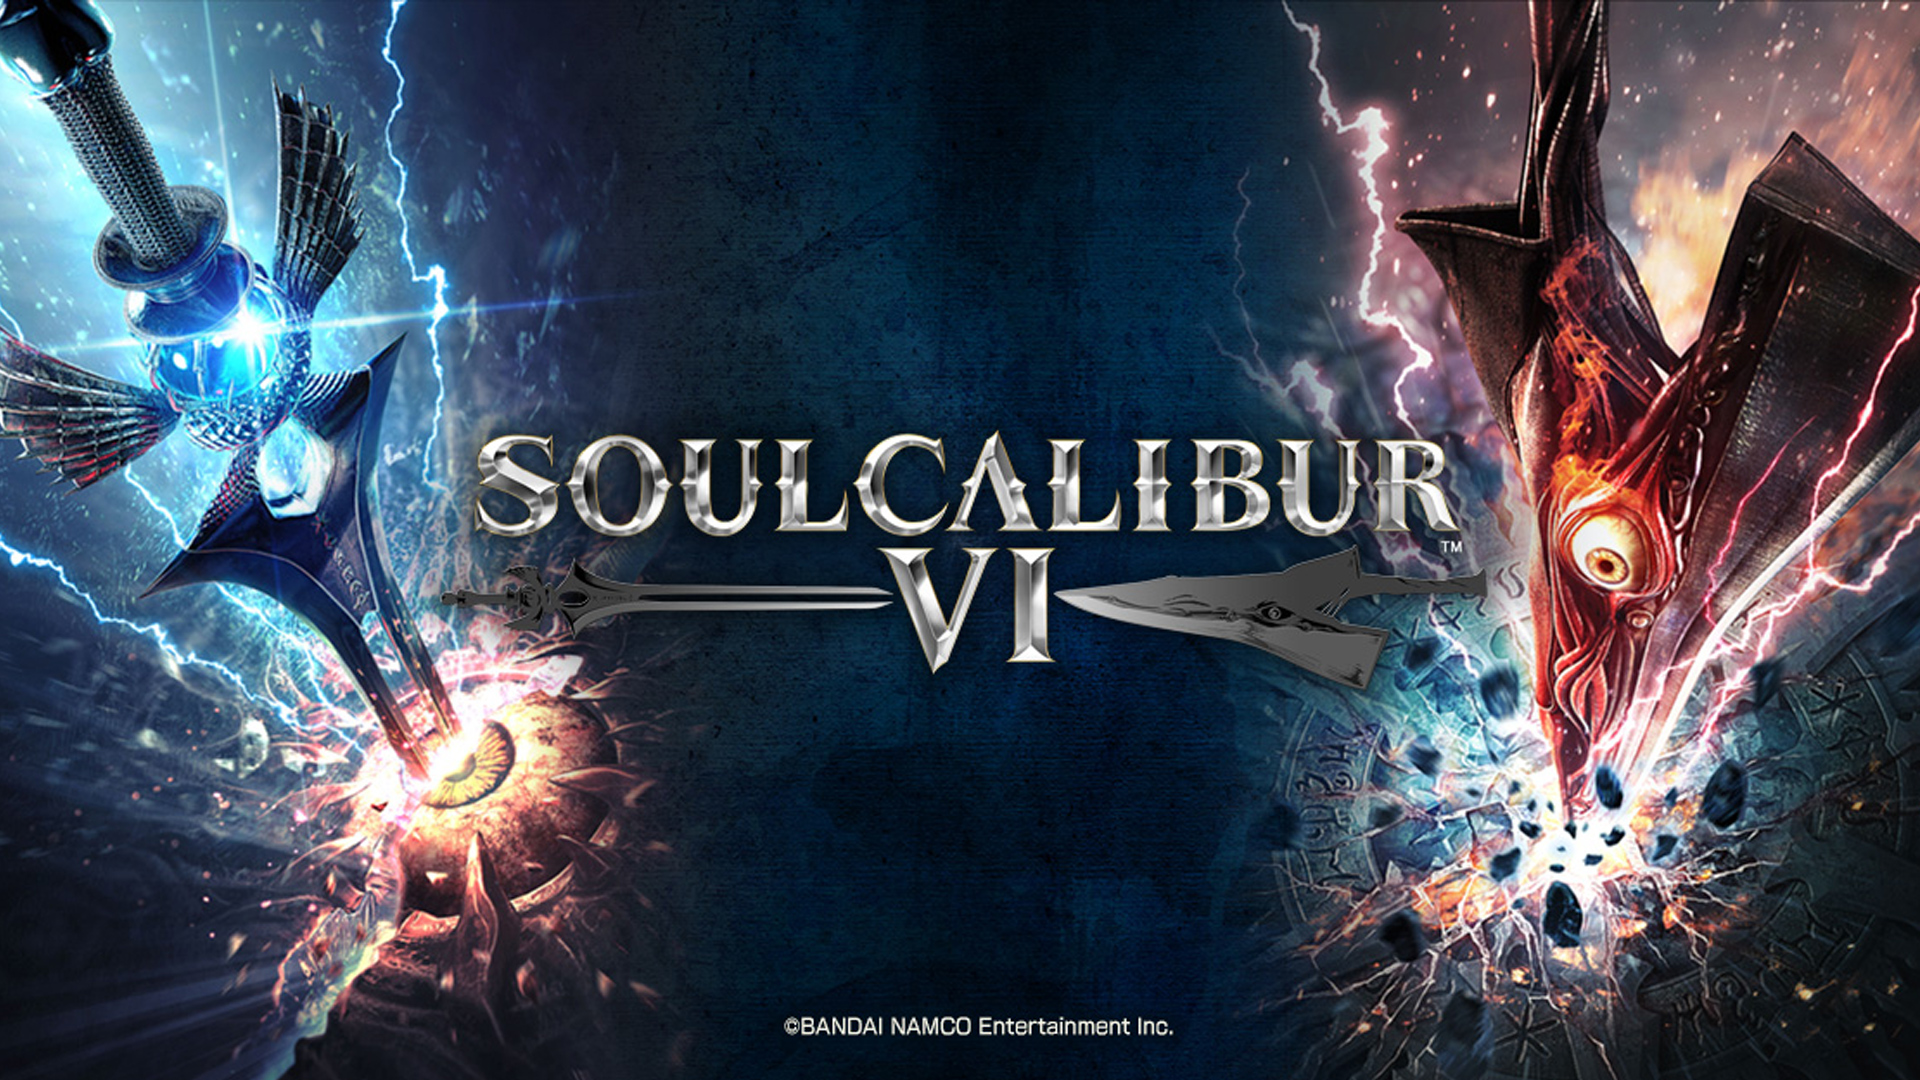 soulcalibur vi season pass 2